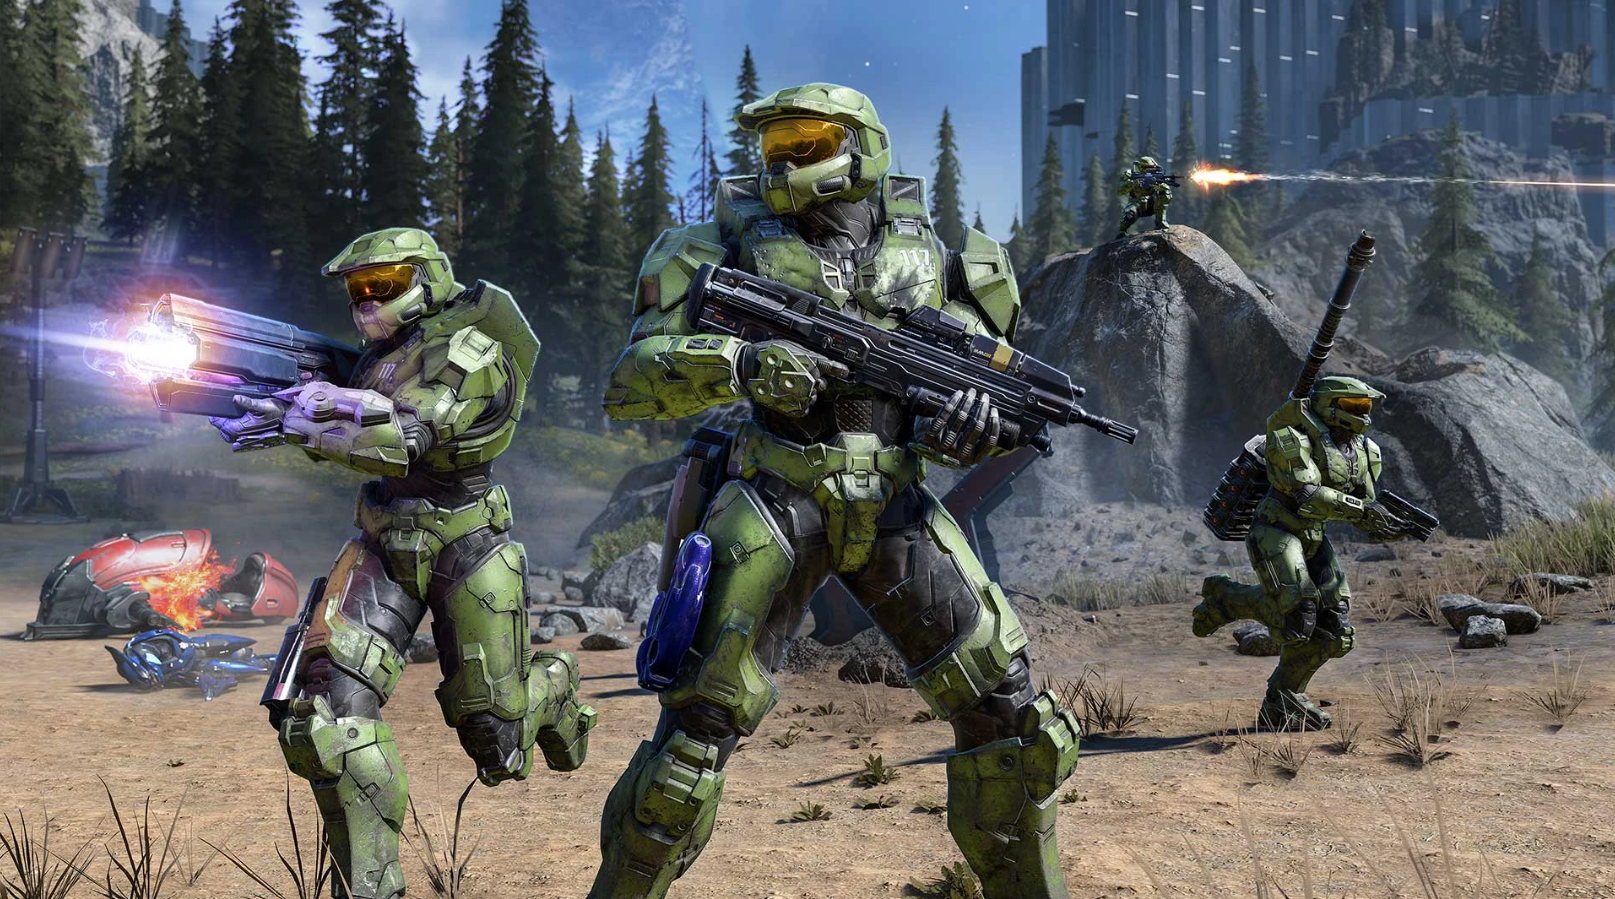 Nhà phát triển Halo có thể sử dụng Unreal Engine cho các dự án trong tương lai